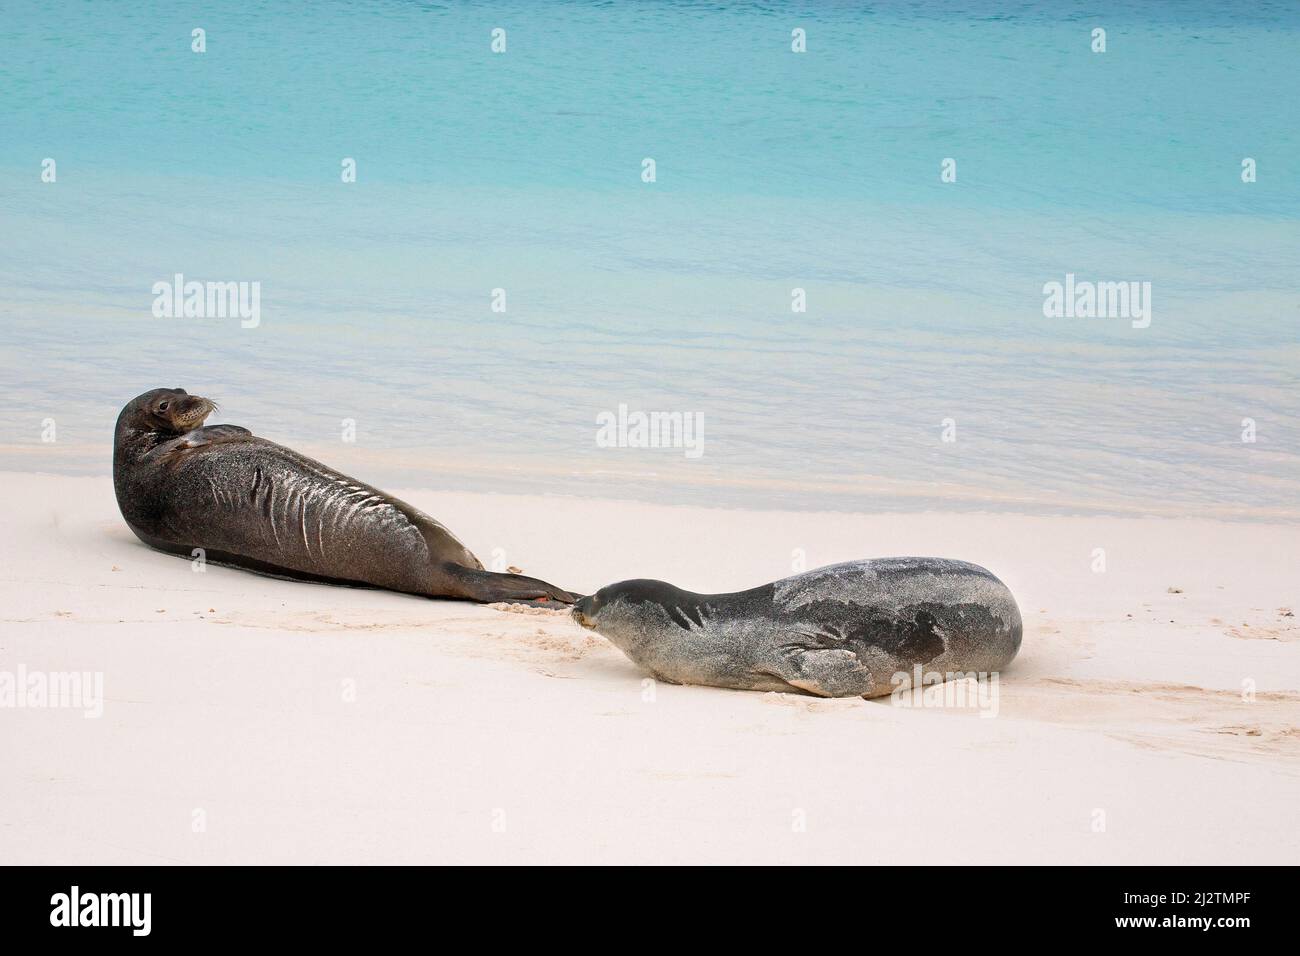 Le foche monache hawaiane in via di estinzione sull'Isola di Sand, l'Atollo Midway, nel Papahanaumokuakea Marine National Monument, Oceano Pacifico. Neomonachus schauinslandi Foto Stock